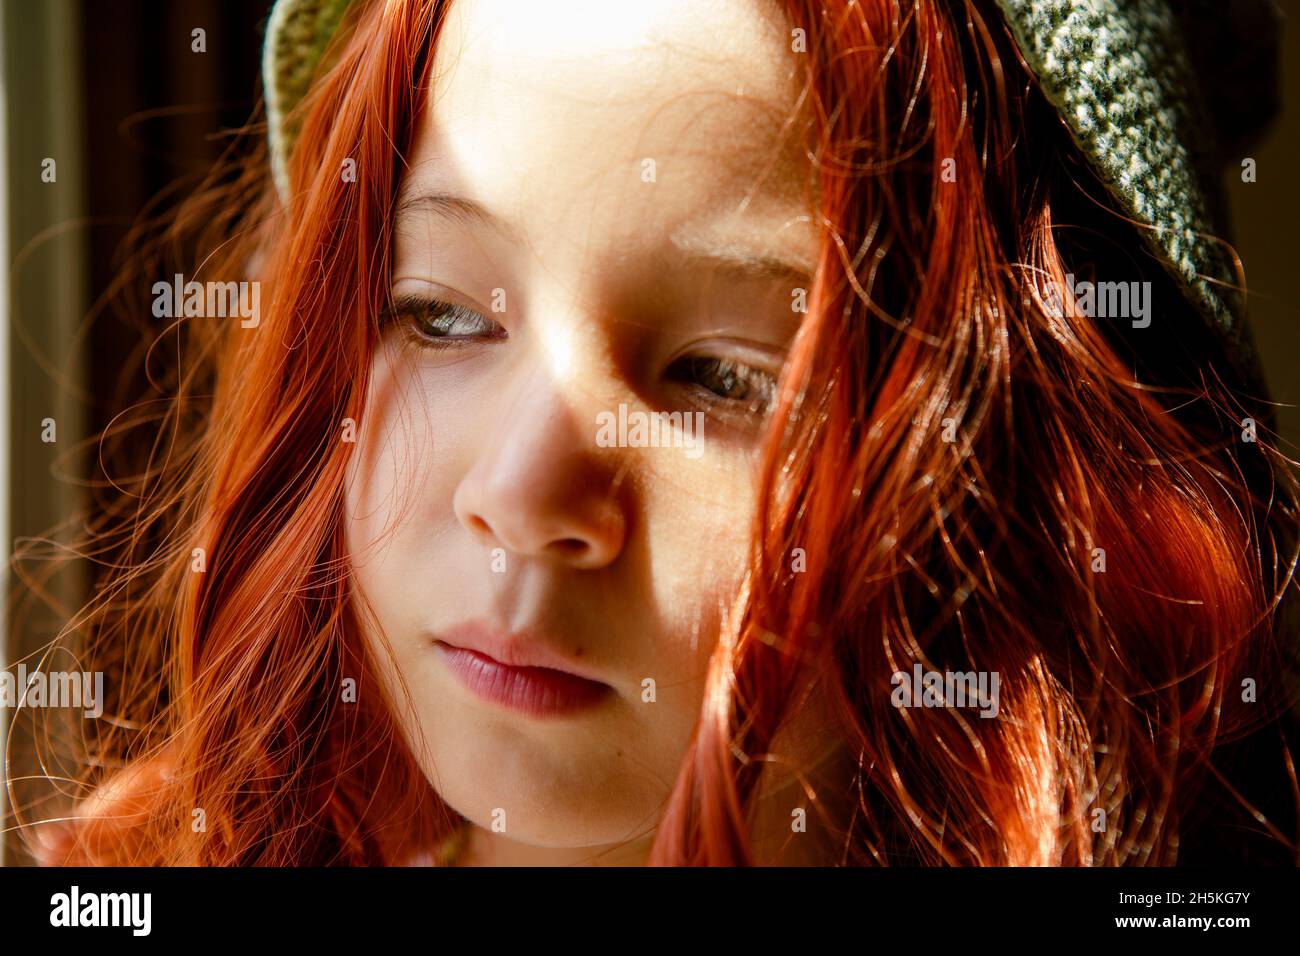 Ein ernsthaftes Kind mit leuchtend roten Haaren steht im Fensterlicht Stockfoto